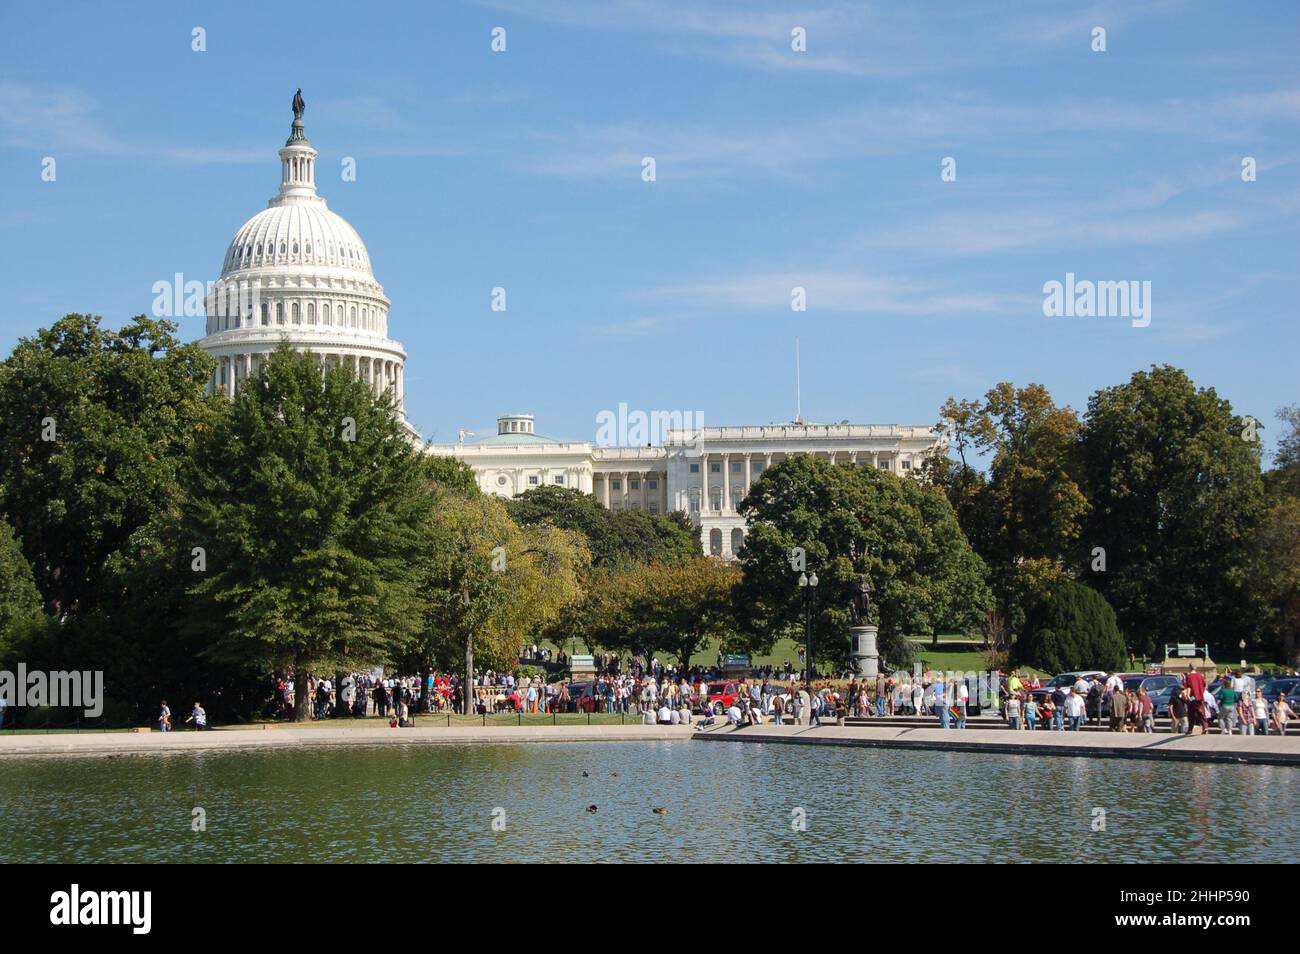 The United States Capitol, Washington D.C. Stock Photo